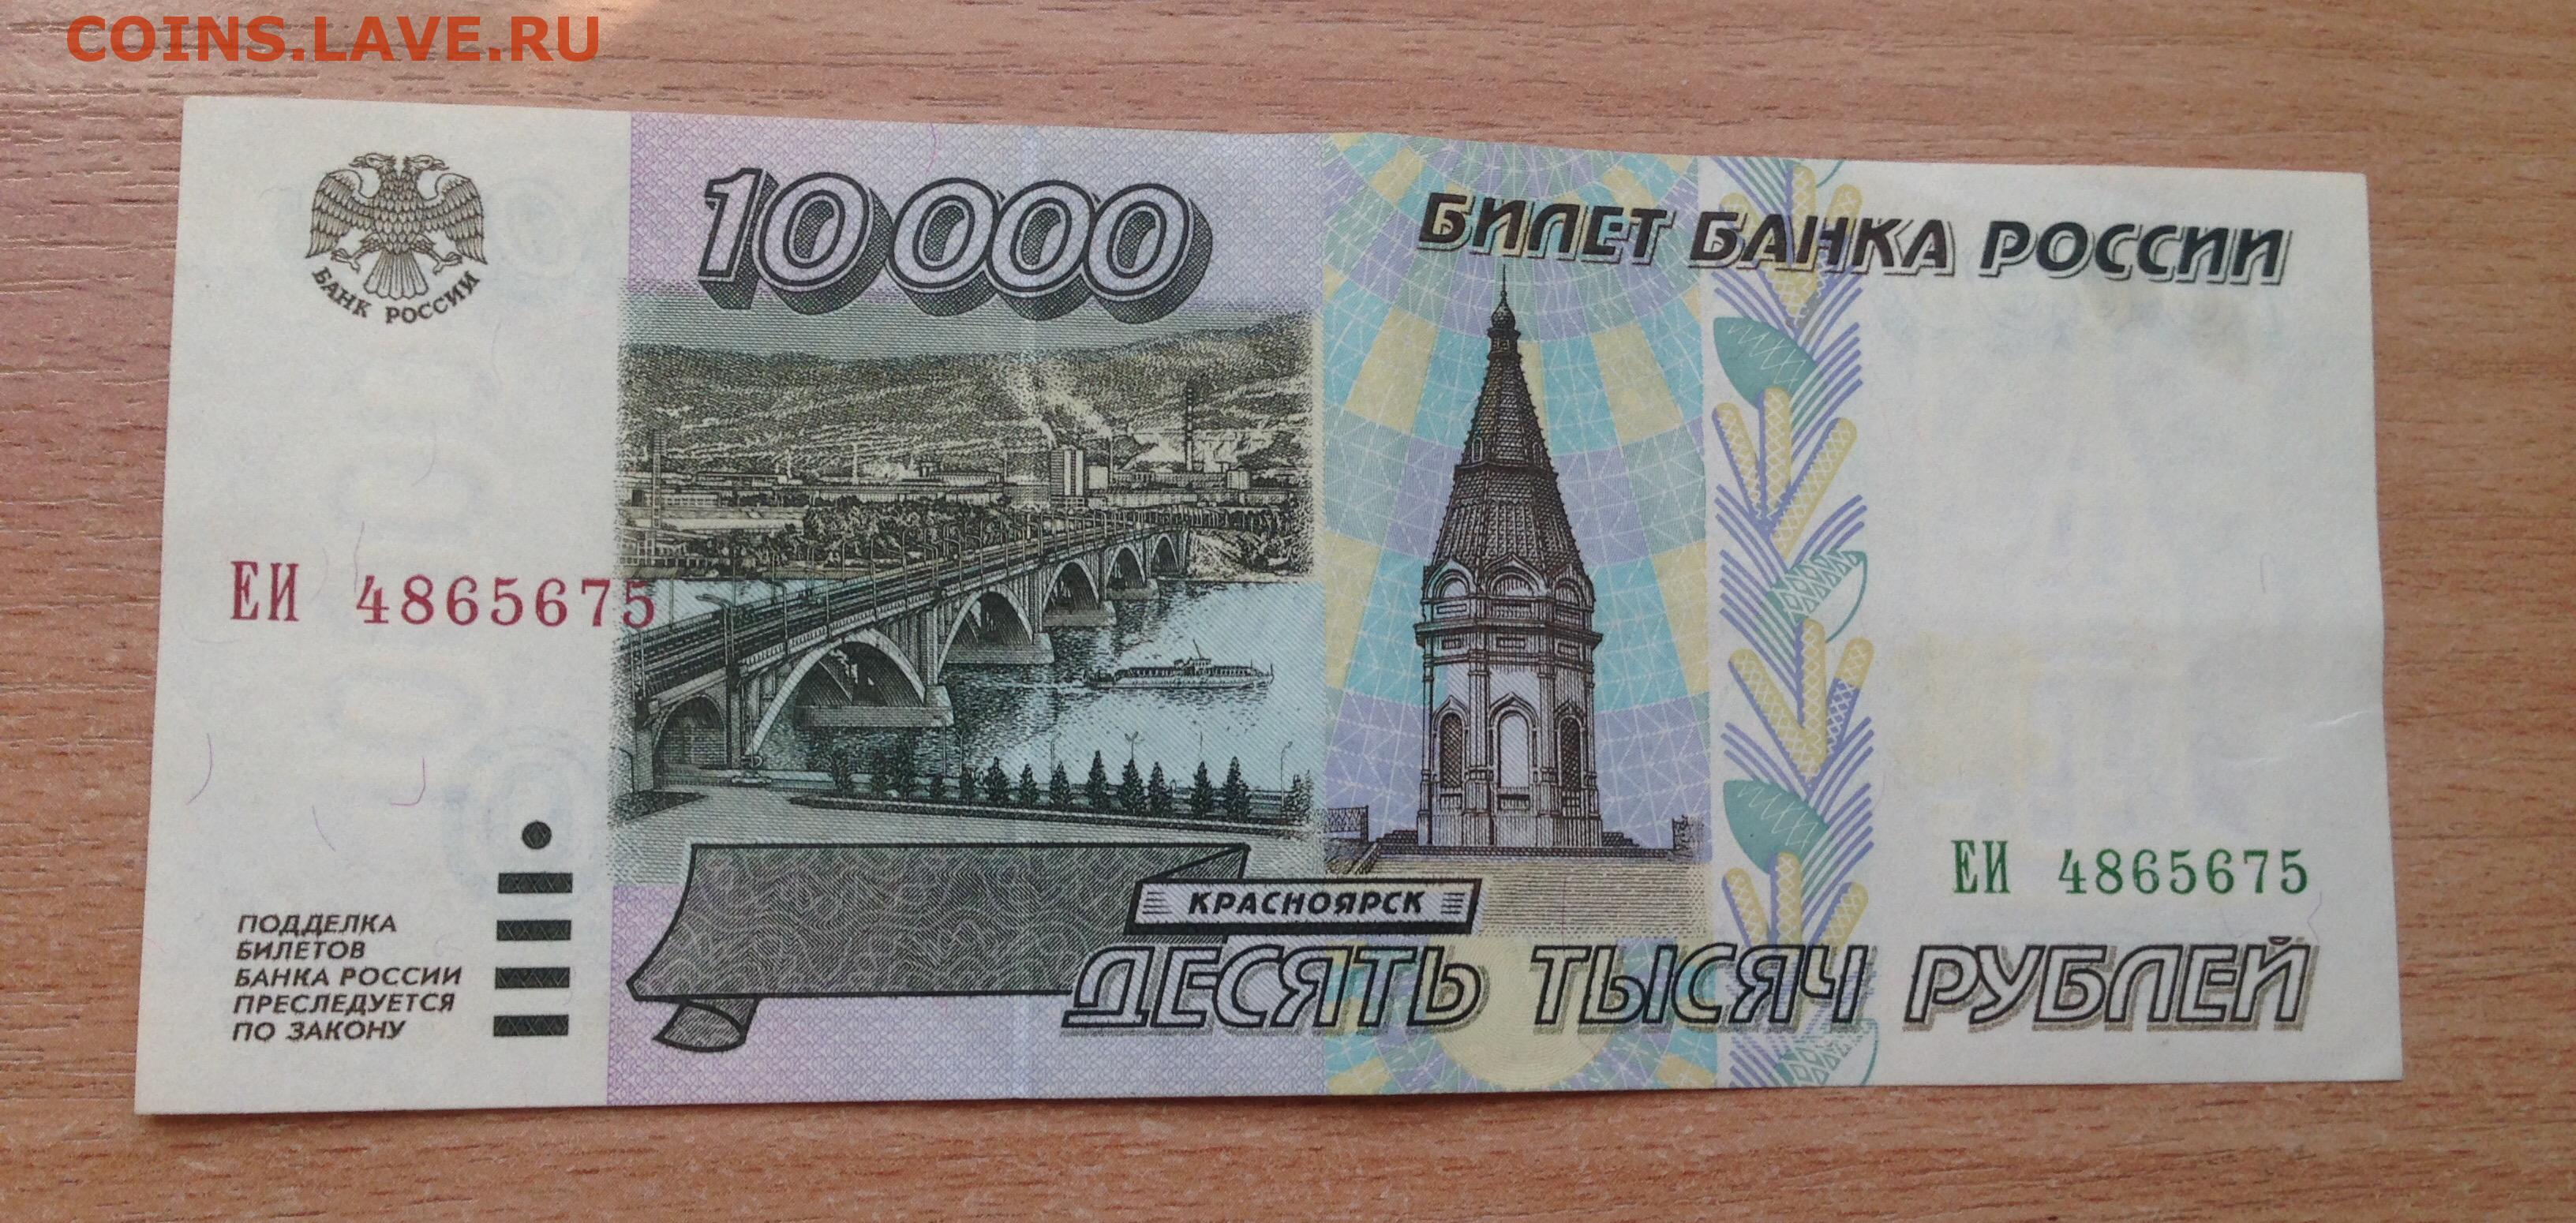 10000 в рублях на сегодня в россии. 10000 Рублей 1995 года. 10000 Рублей купюра 1995. 10000 Рублей 98 года. Купюра 10000 рублей 1995 года можно ли обменять в Сбербанке.